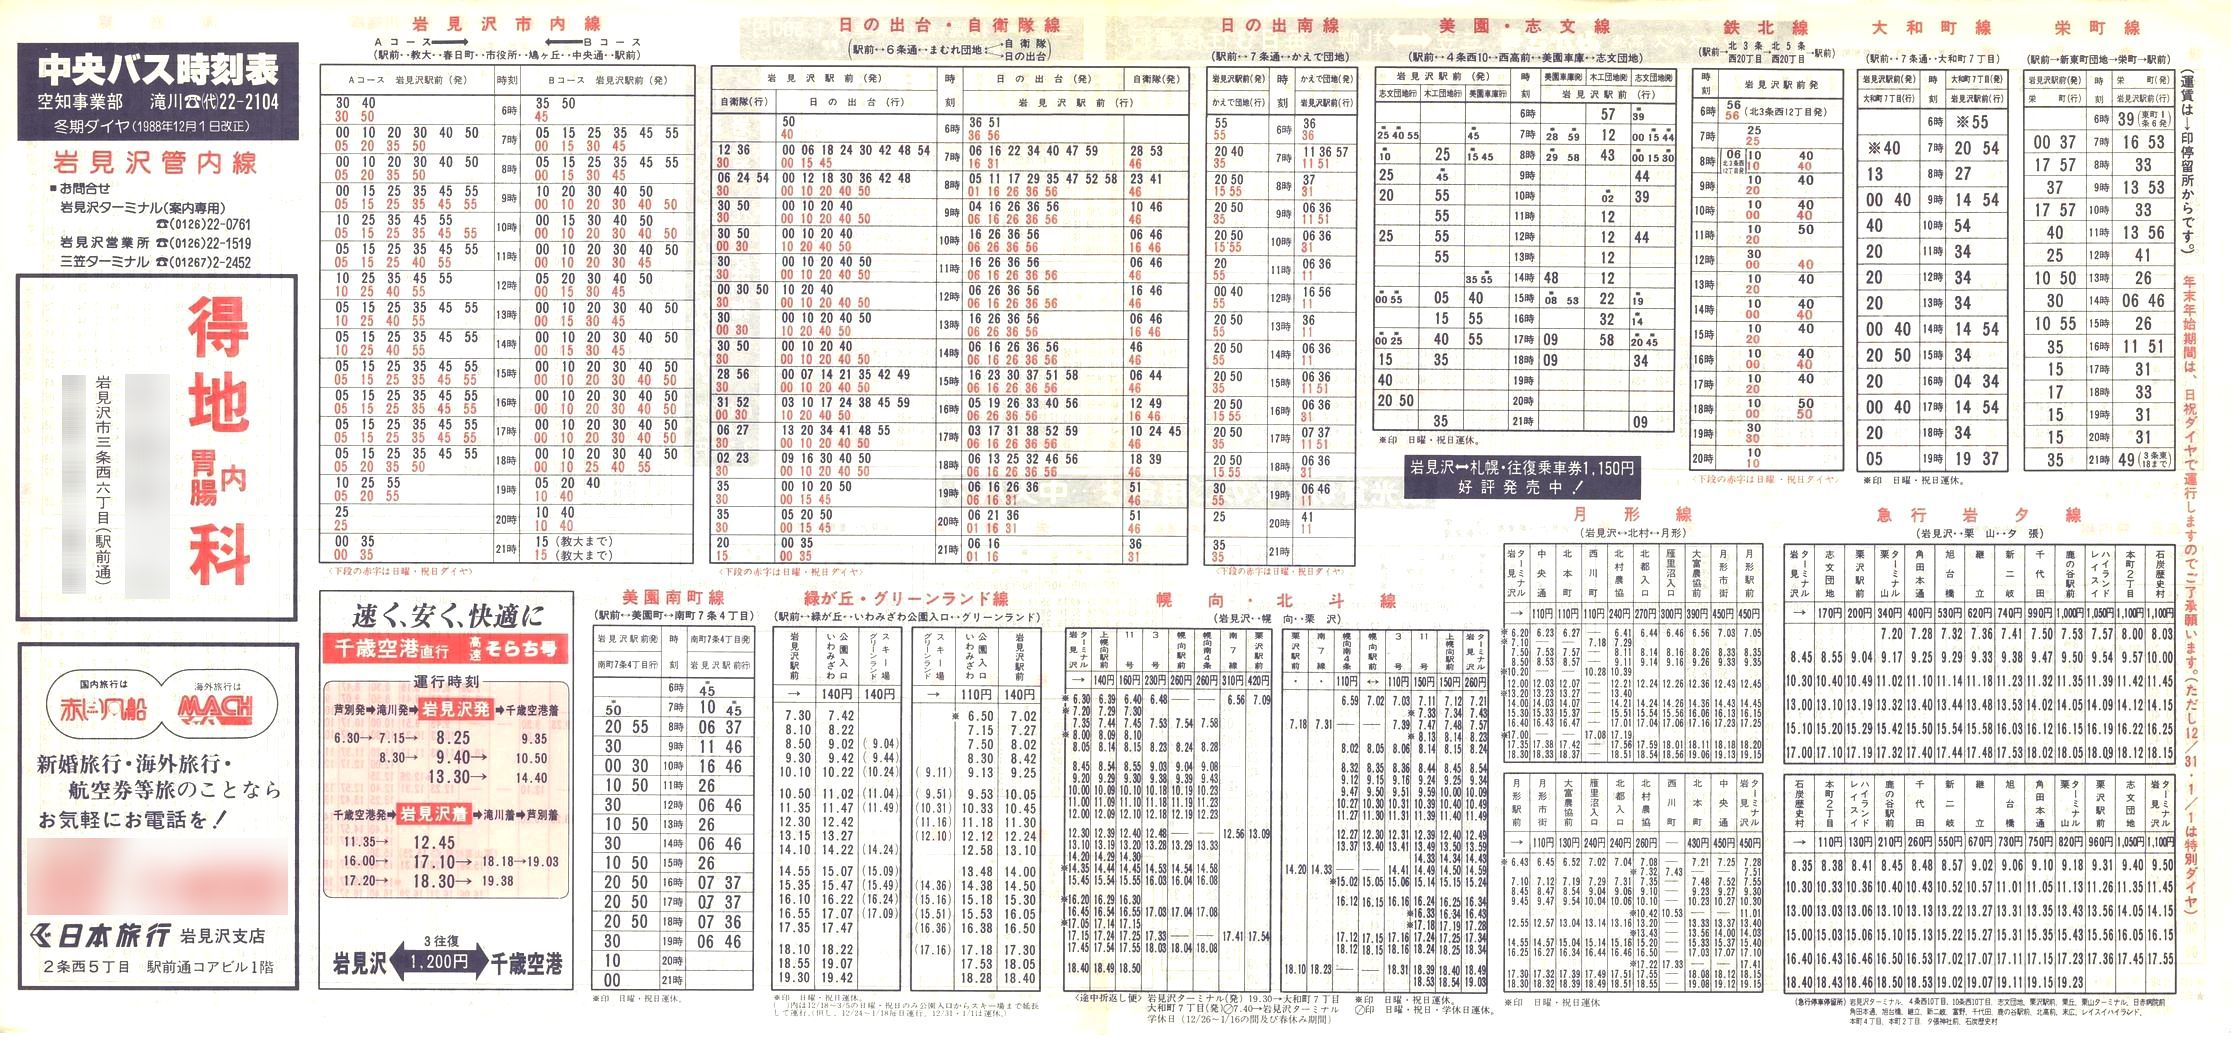 1988-12-01改正_北海道中央バス(空知)_岩見沢管内線時刻表表面